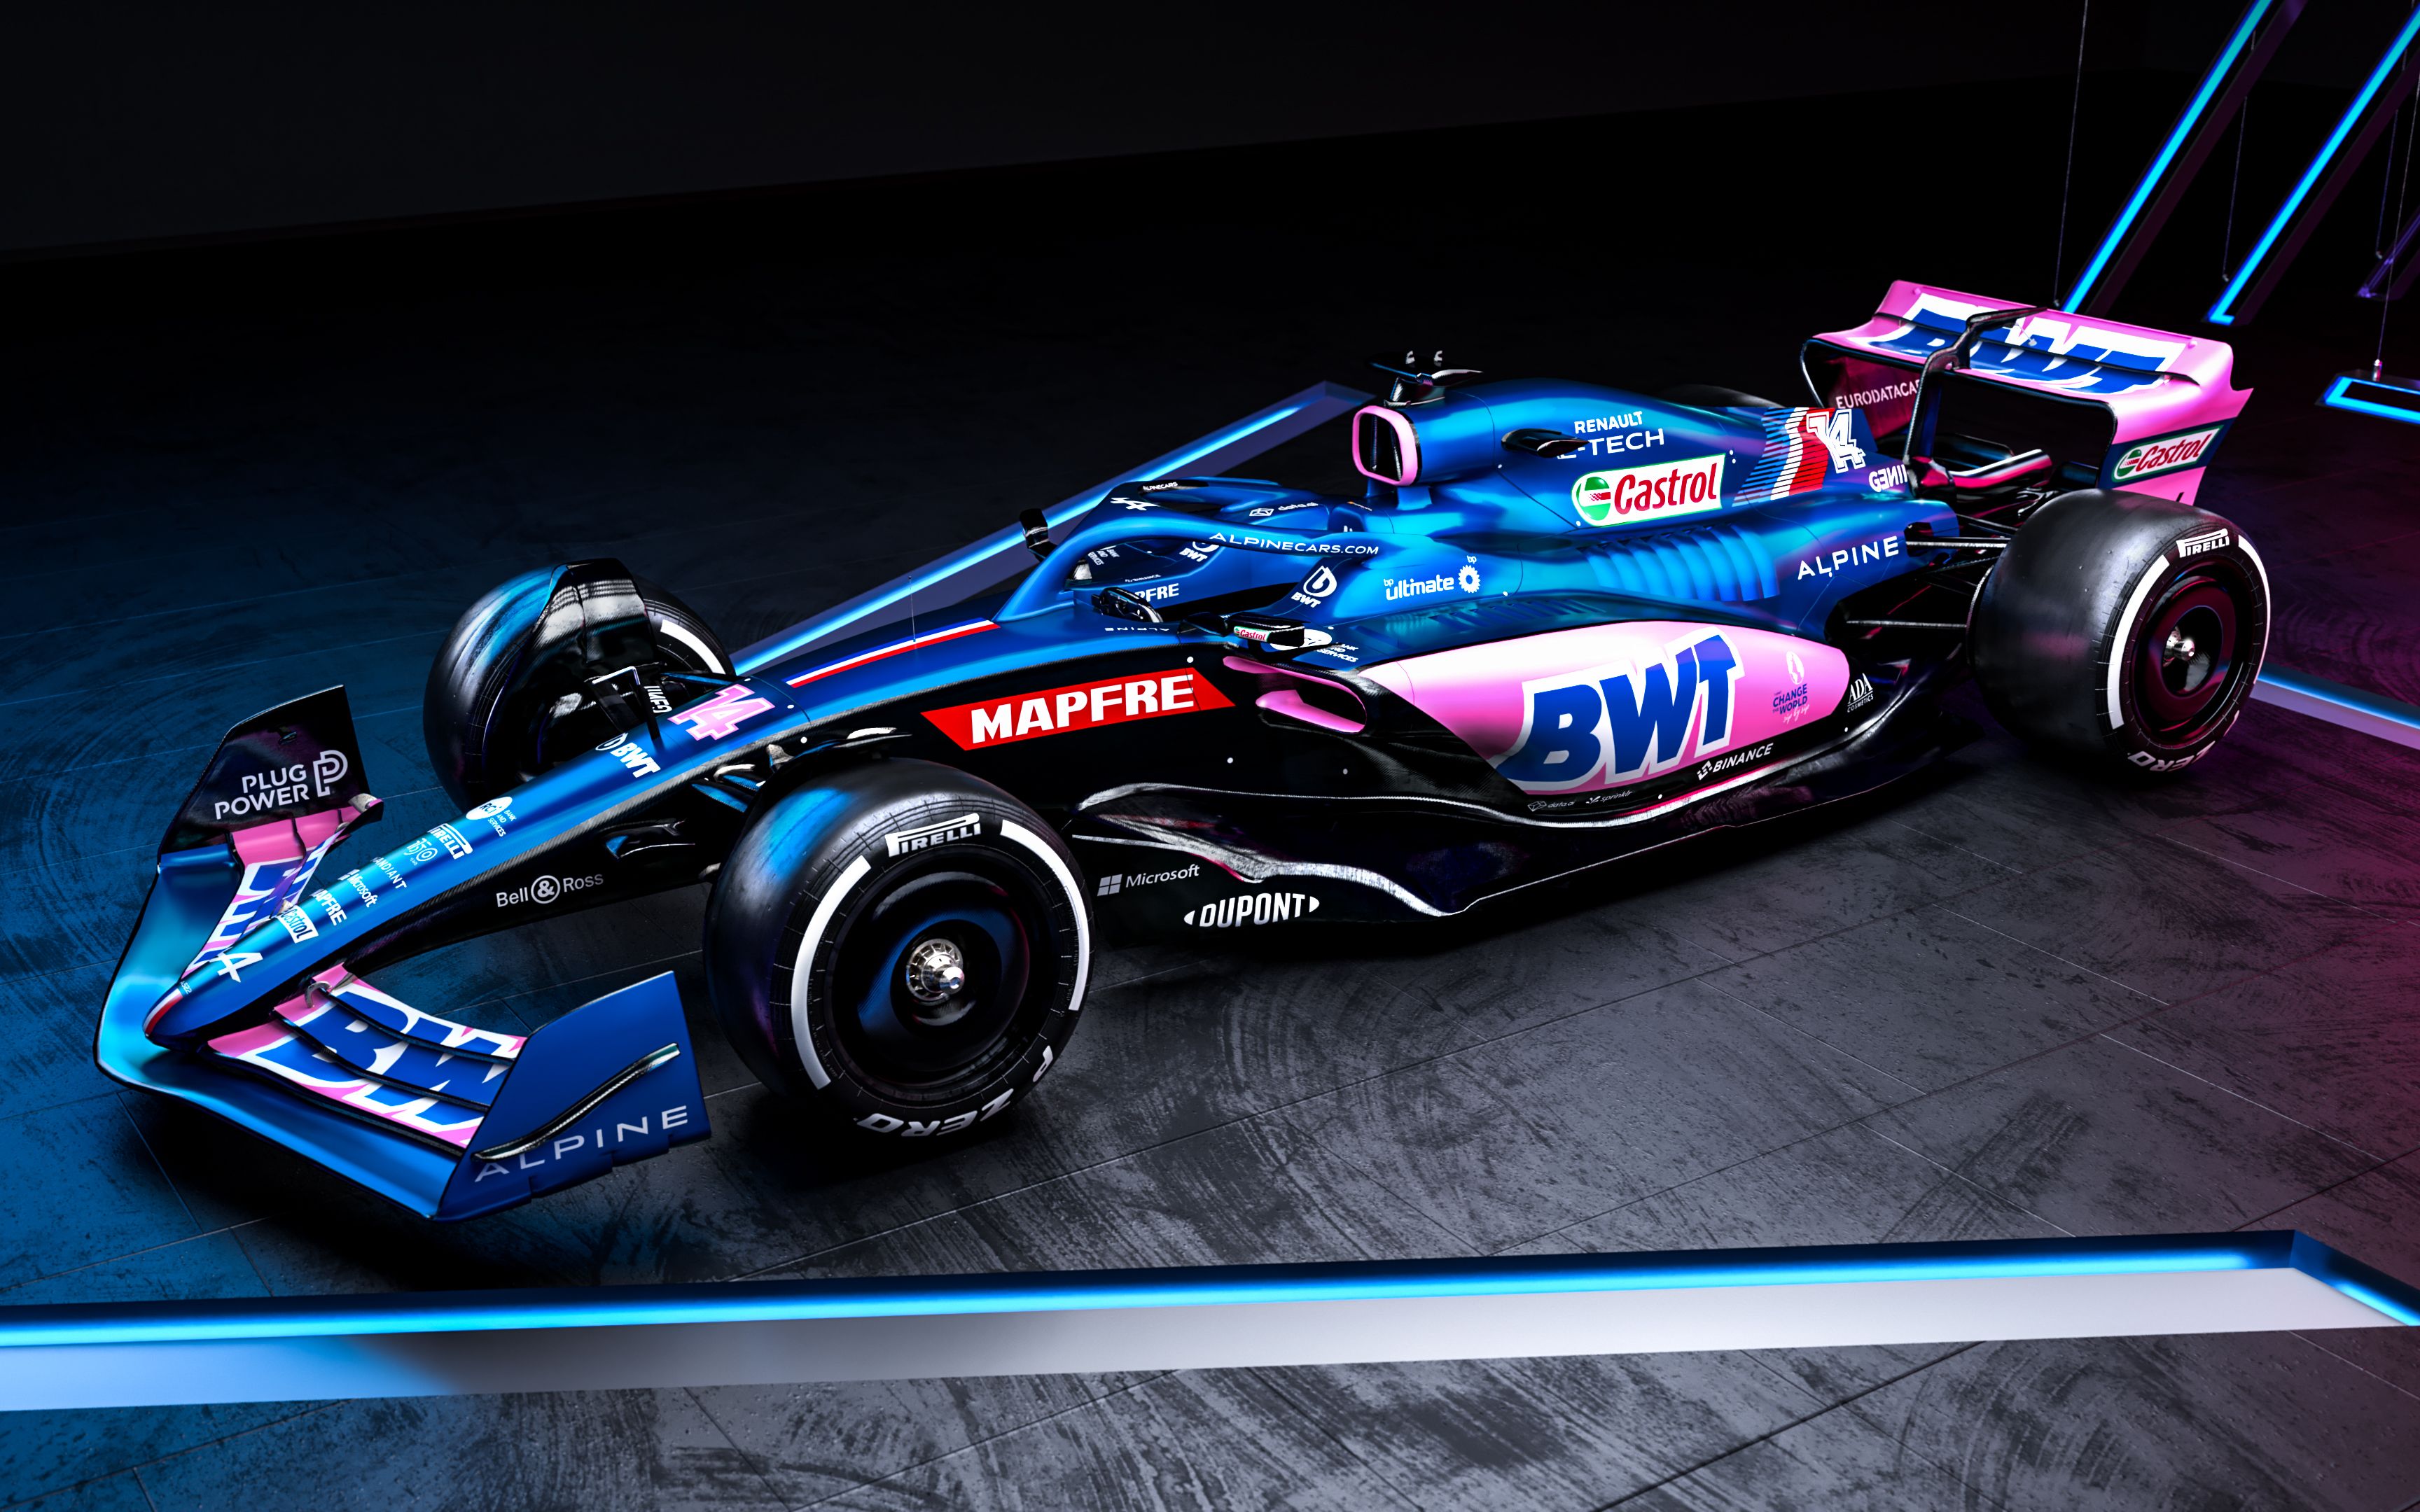 bwt alpine 雷诺f1车队发布2022赛季新车a522